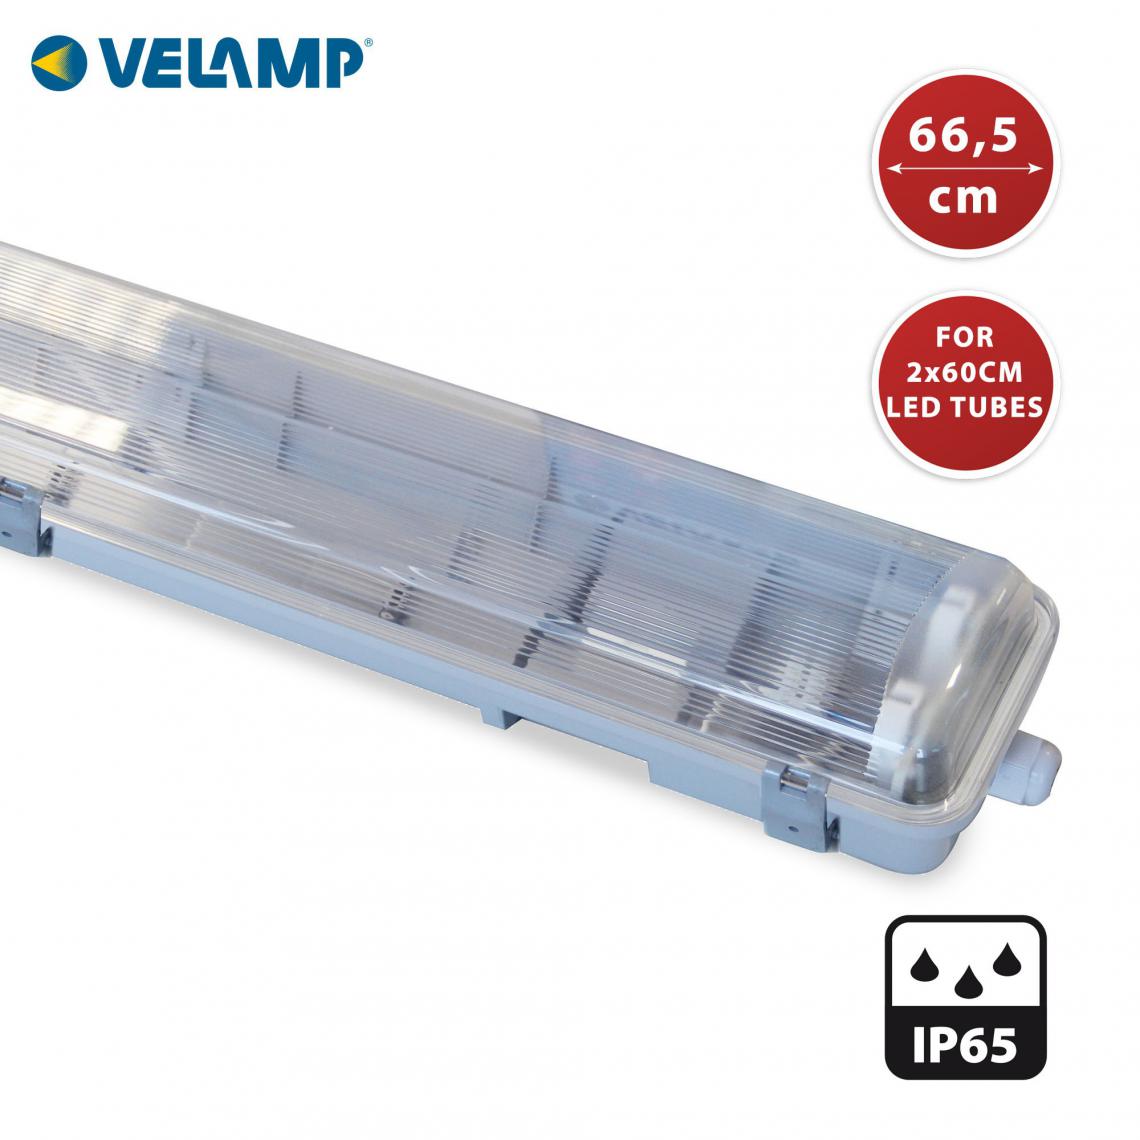 Velamp - Réglette exclusivement pour 2 tubes LED de 60cm. IP65 - Spot, projecteur